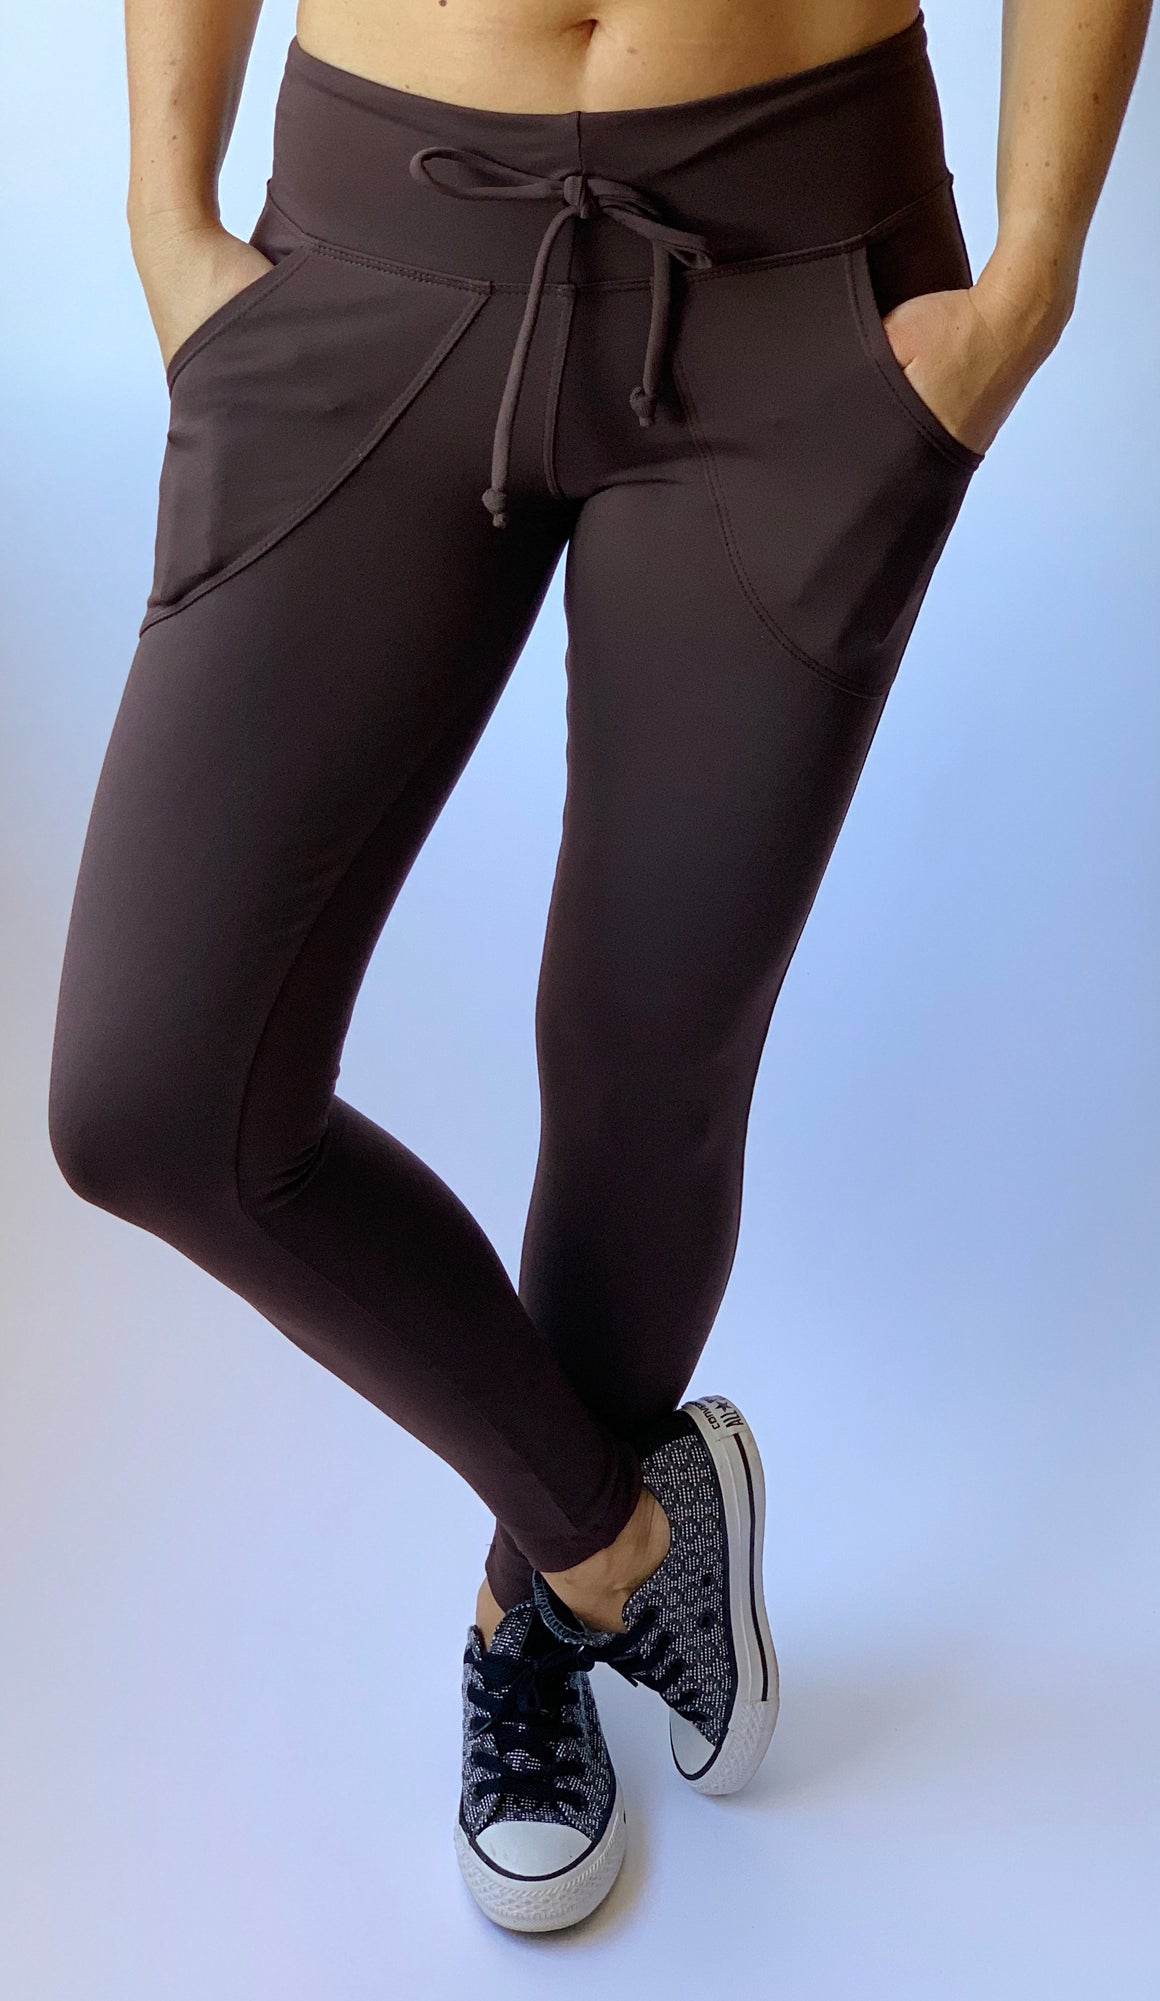 Lululemon Black Leggings Drawstring Waist Pockets Full Length | Lululemon  black leggings, Black leggings, Full length